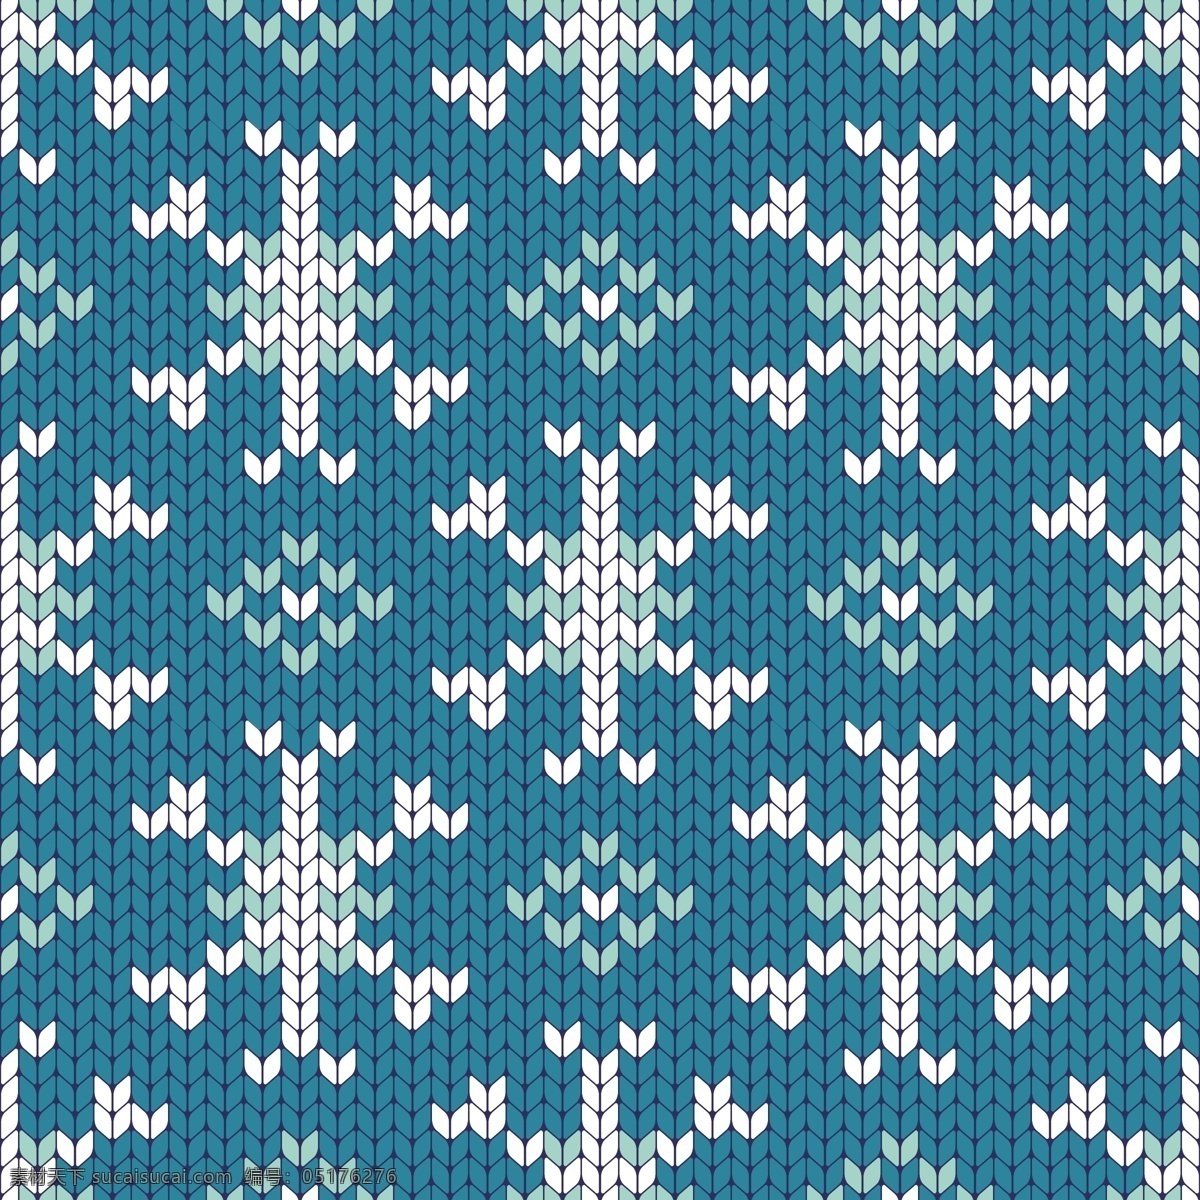 蓝白 雪花 圣诞节 填充 背景 矢量 冬季 冬天 花朵 节日 蓝色 平面素材 设计素材 矢量素材 下雪 雪白